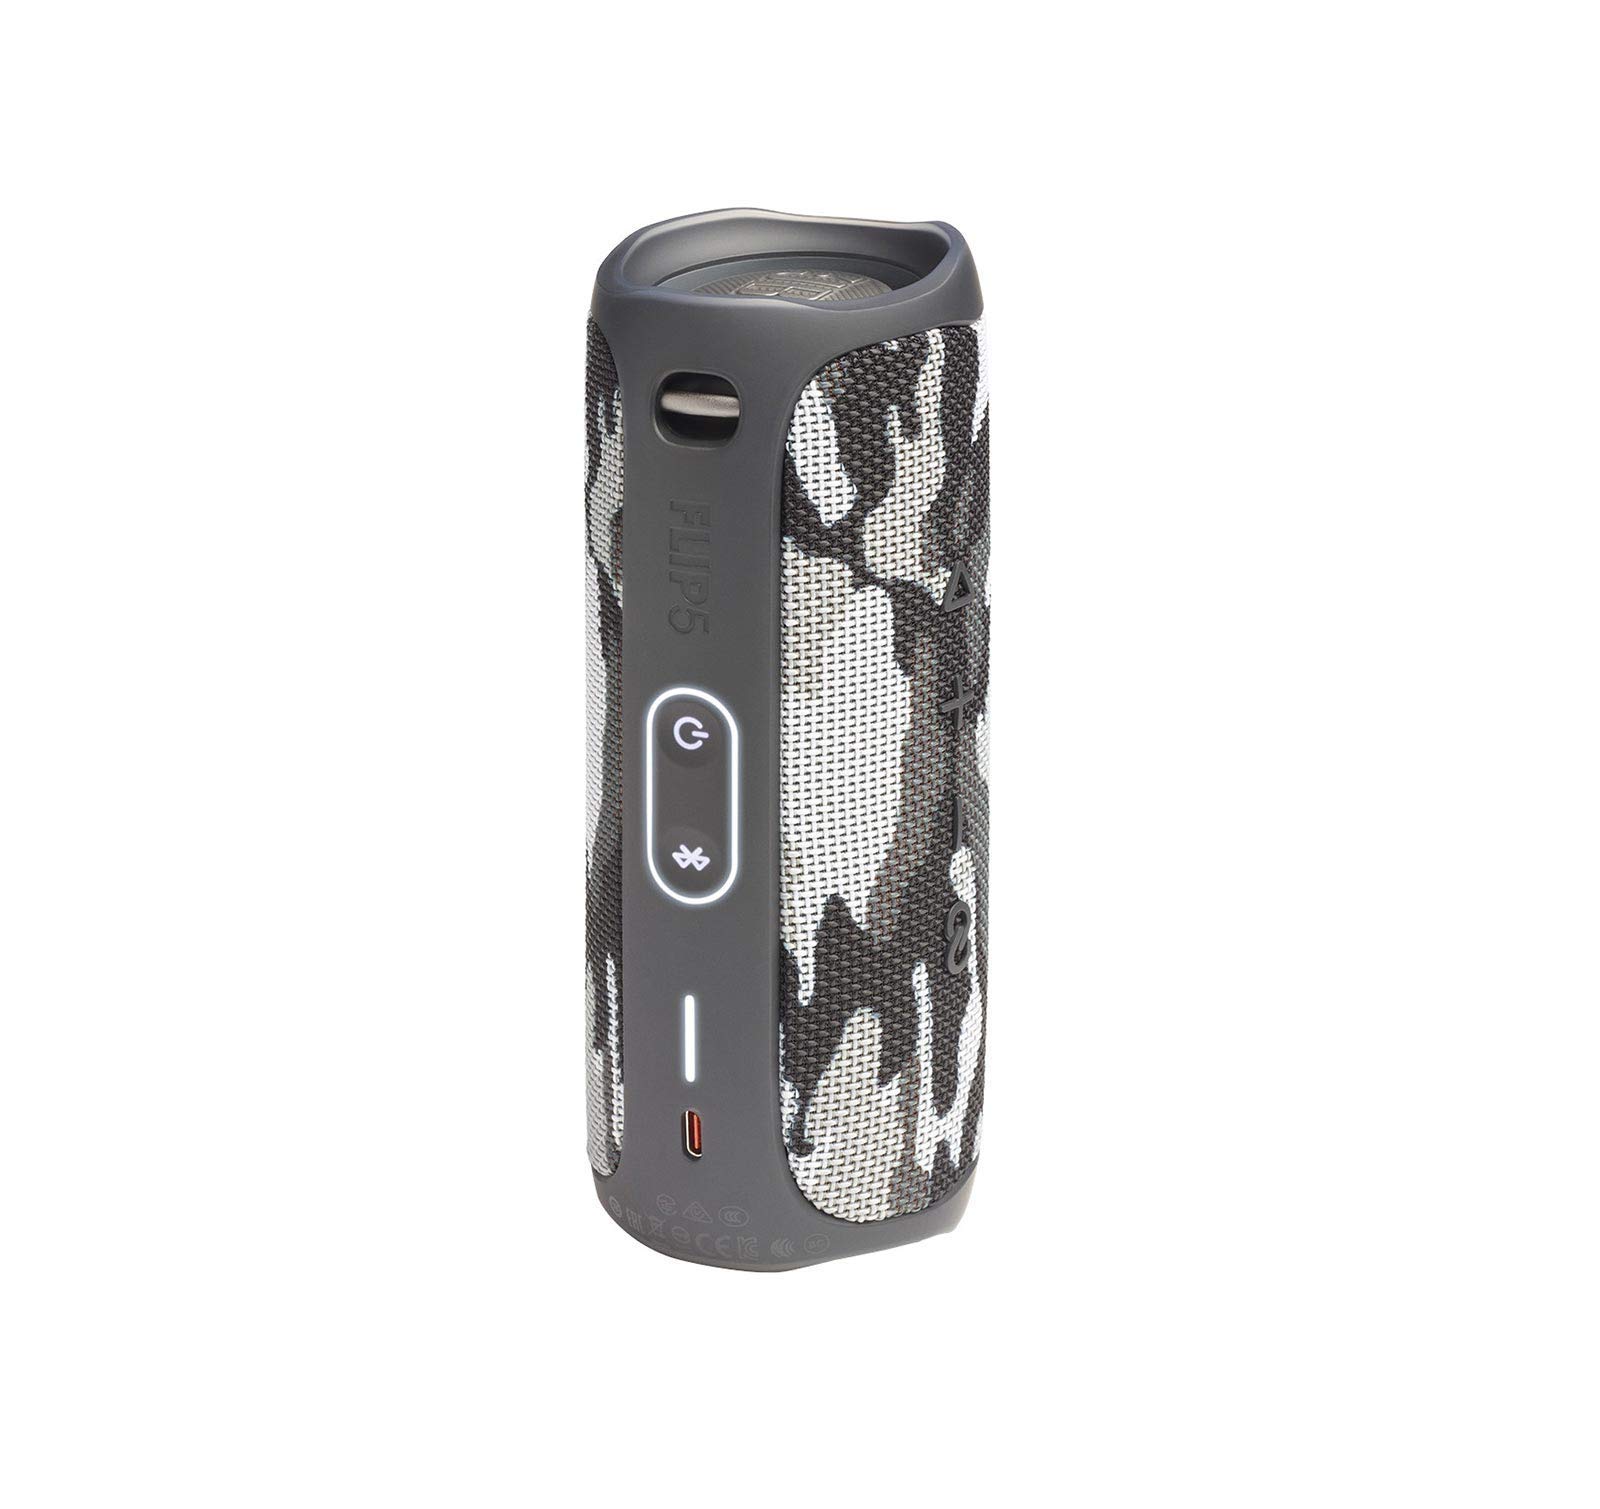 JBL Flip 5 Portable Waterproof Wireless Bluetooth Speaker - Black Camo (Renewed)